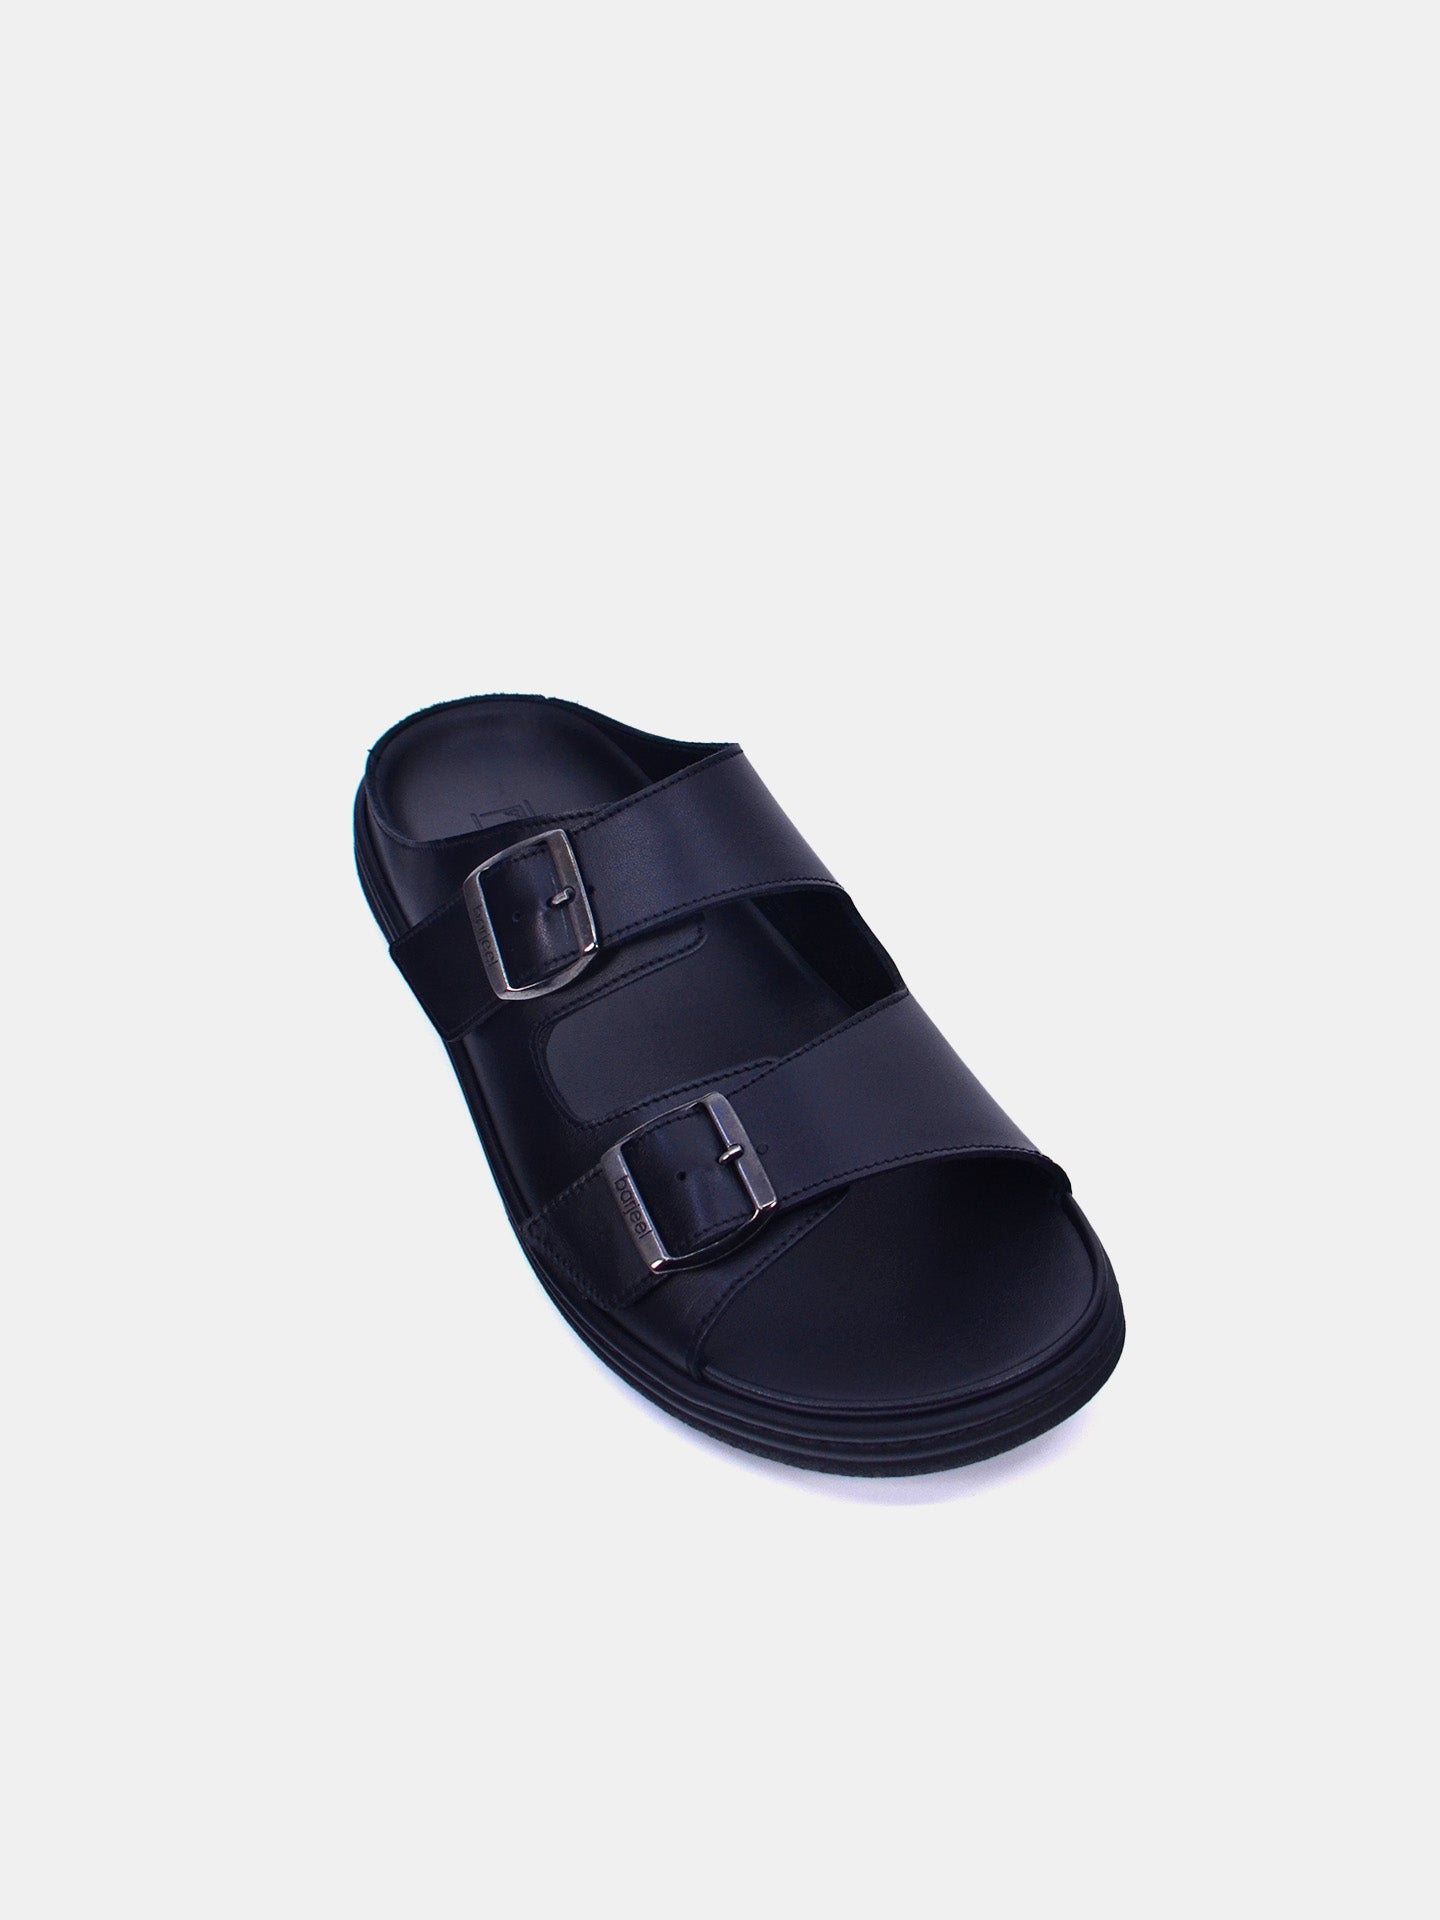 Barjeel Uno 23810 Men's Arabic Sandals #color_Black